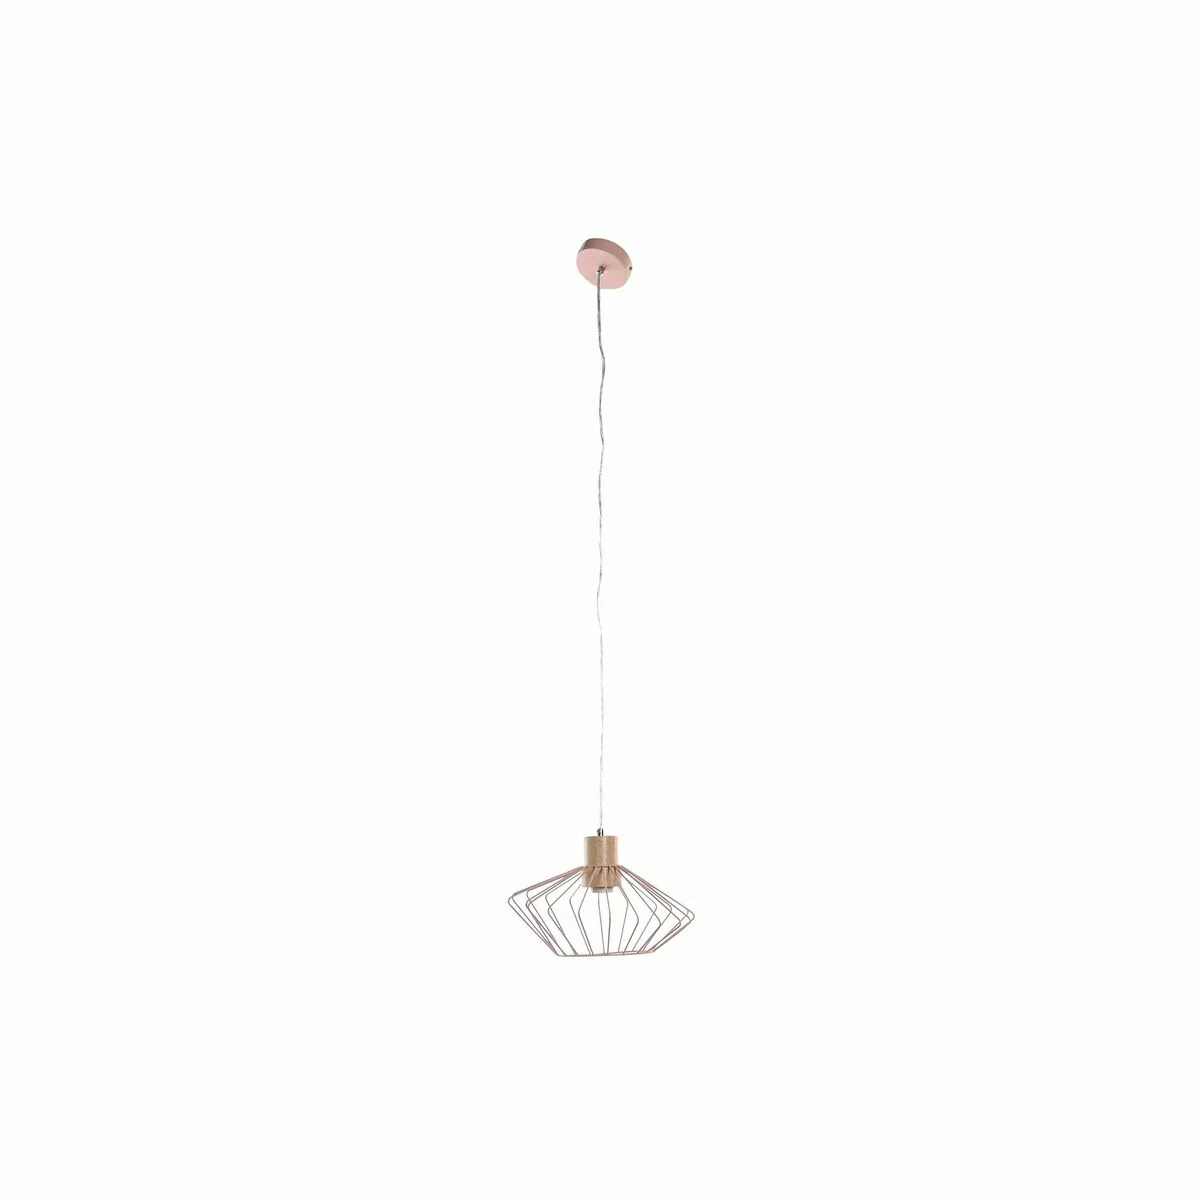 Deckenlampe Dkd Home Decor Silberfarben Schwarz Grau Rosa Metall Weiß 50 W günstig online kaufen